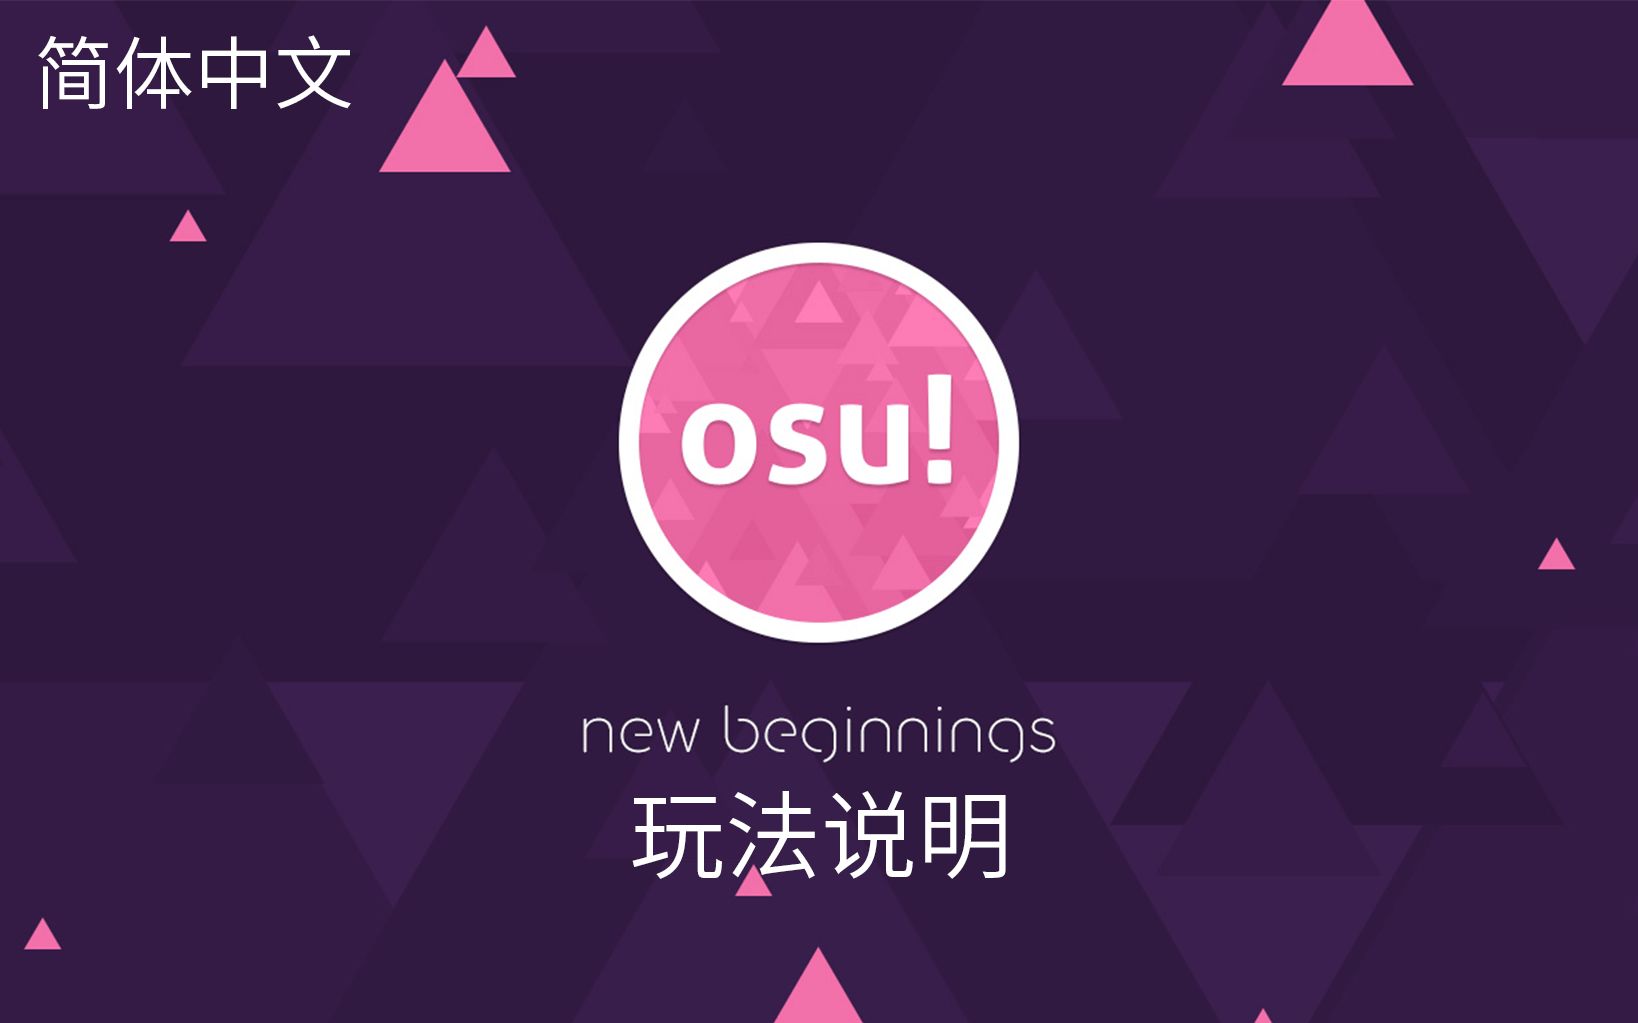 osu! 新手教程-玩法说明 简体中文版